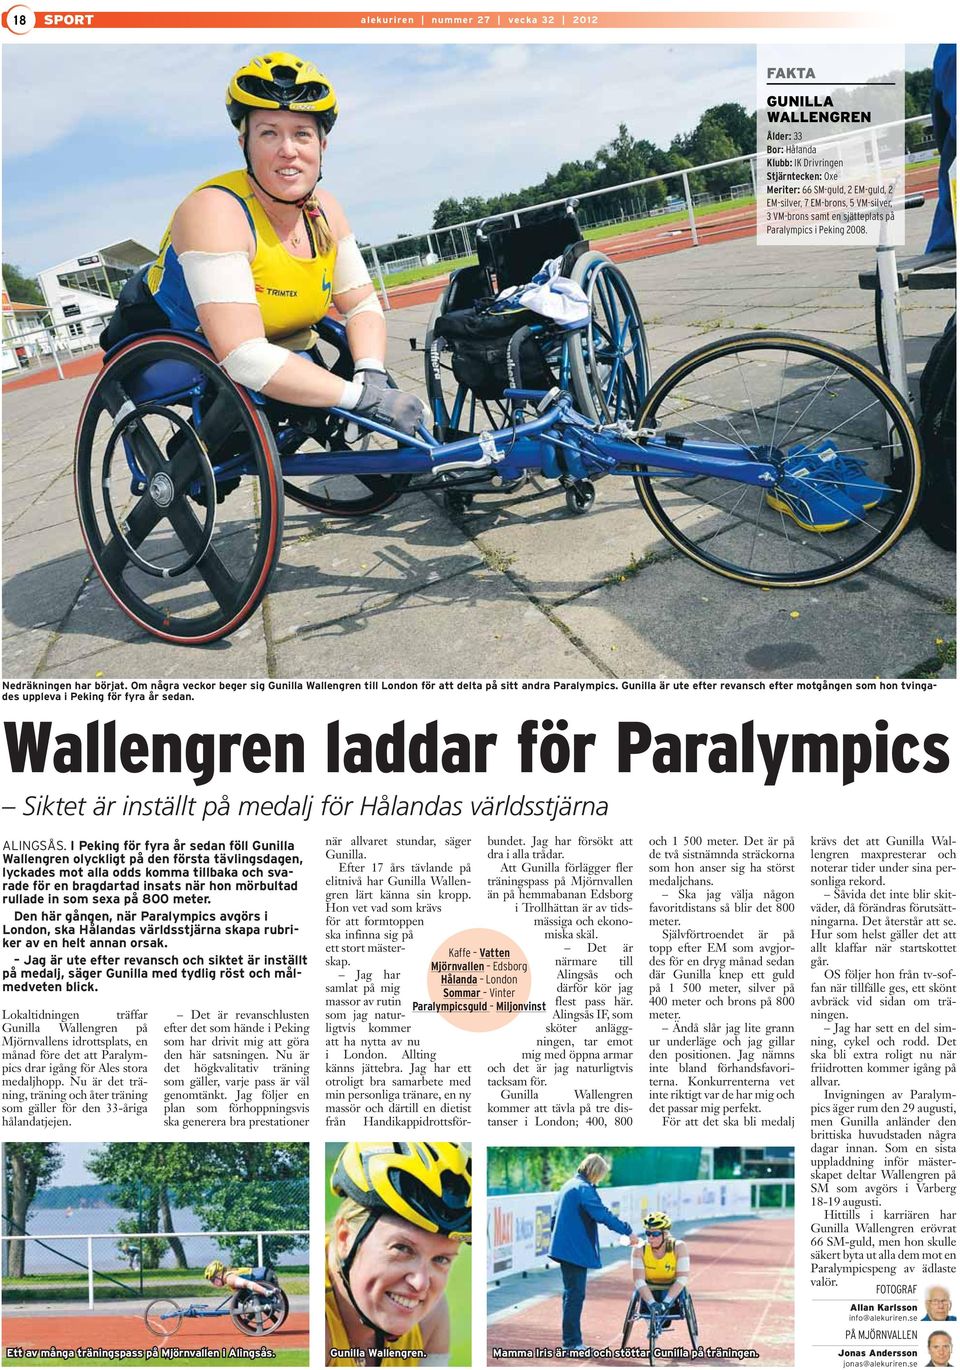 Gunilla är ute efter revansch efter motgången som hon tvingades uppleva i Peking för fyra år sedan. Wallengren laddar för Paralympics Siktet är inställt på medalj för Hålandas världsstjärna ALINGSÅS.